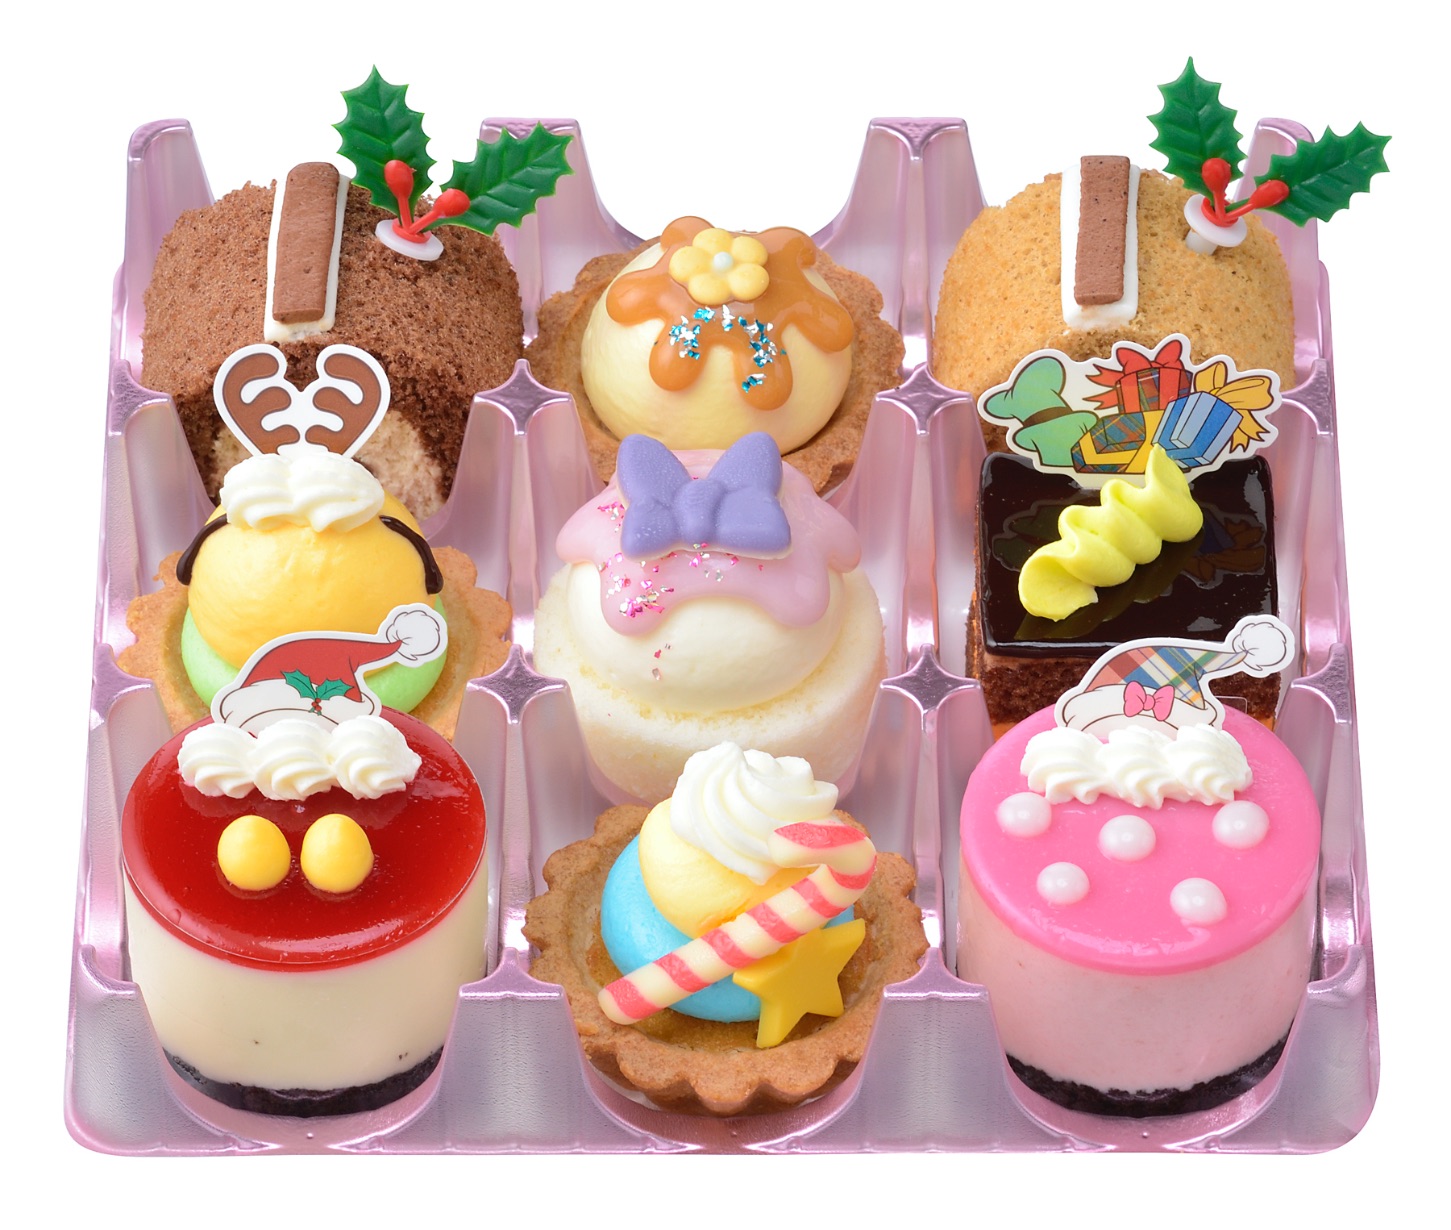 銀座コージーコーナーがクリスマス限定 ミッキー フレンズ のプチケーキセットを発売 Moshi Moshi Nippon もしもしにっぽん